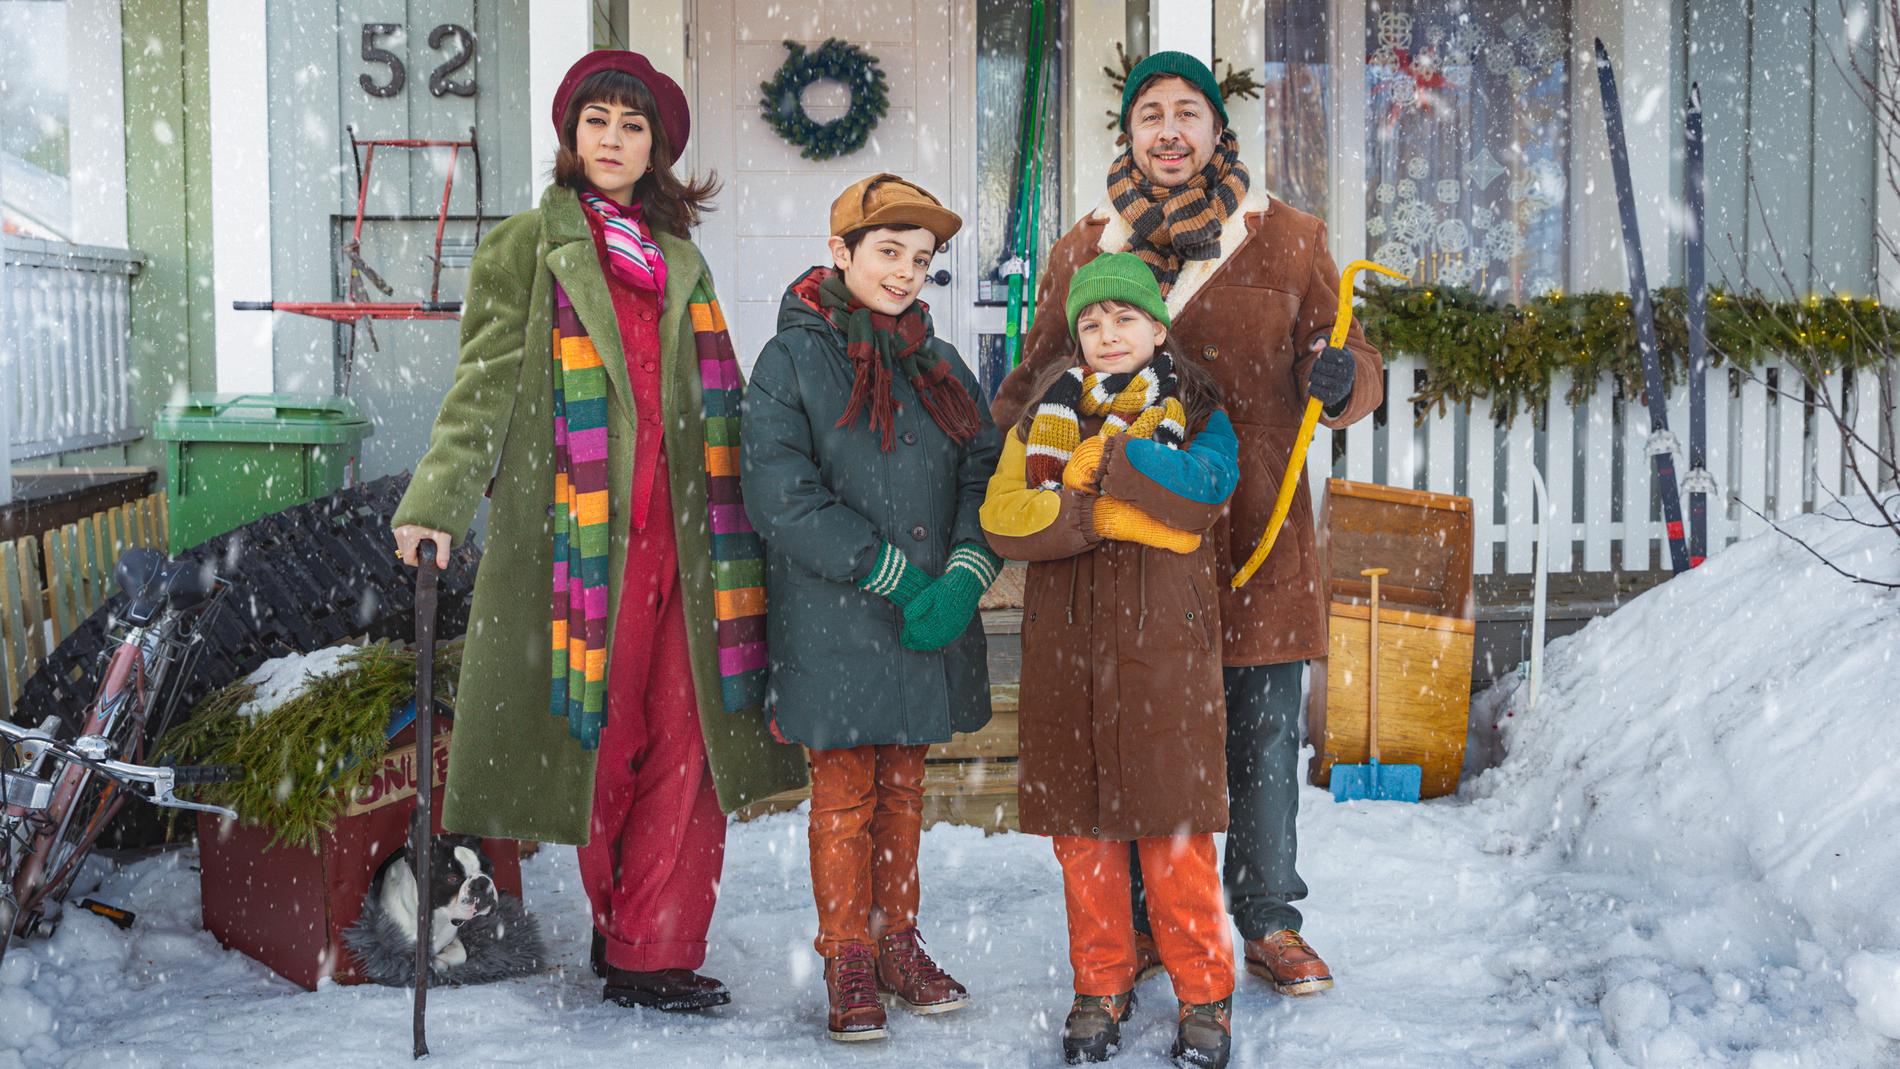 ”En hederlig jul med familjen Knyckertz” är julkalender på SVT 2021